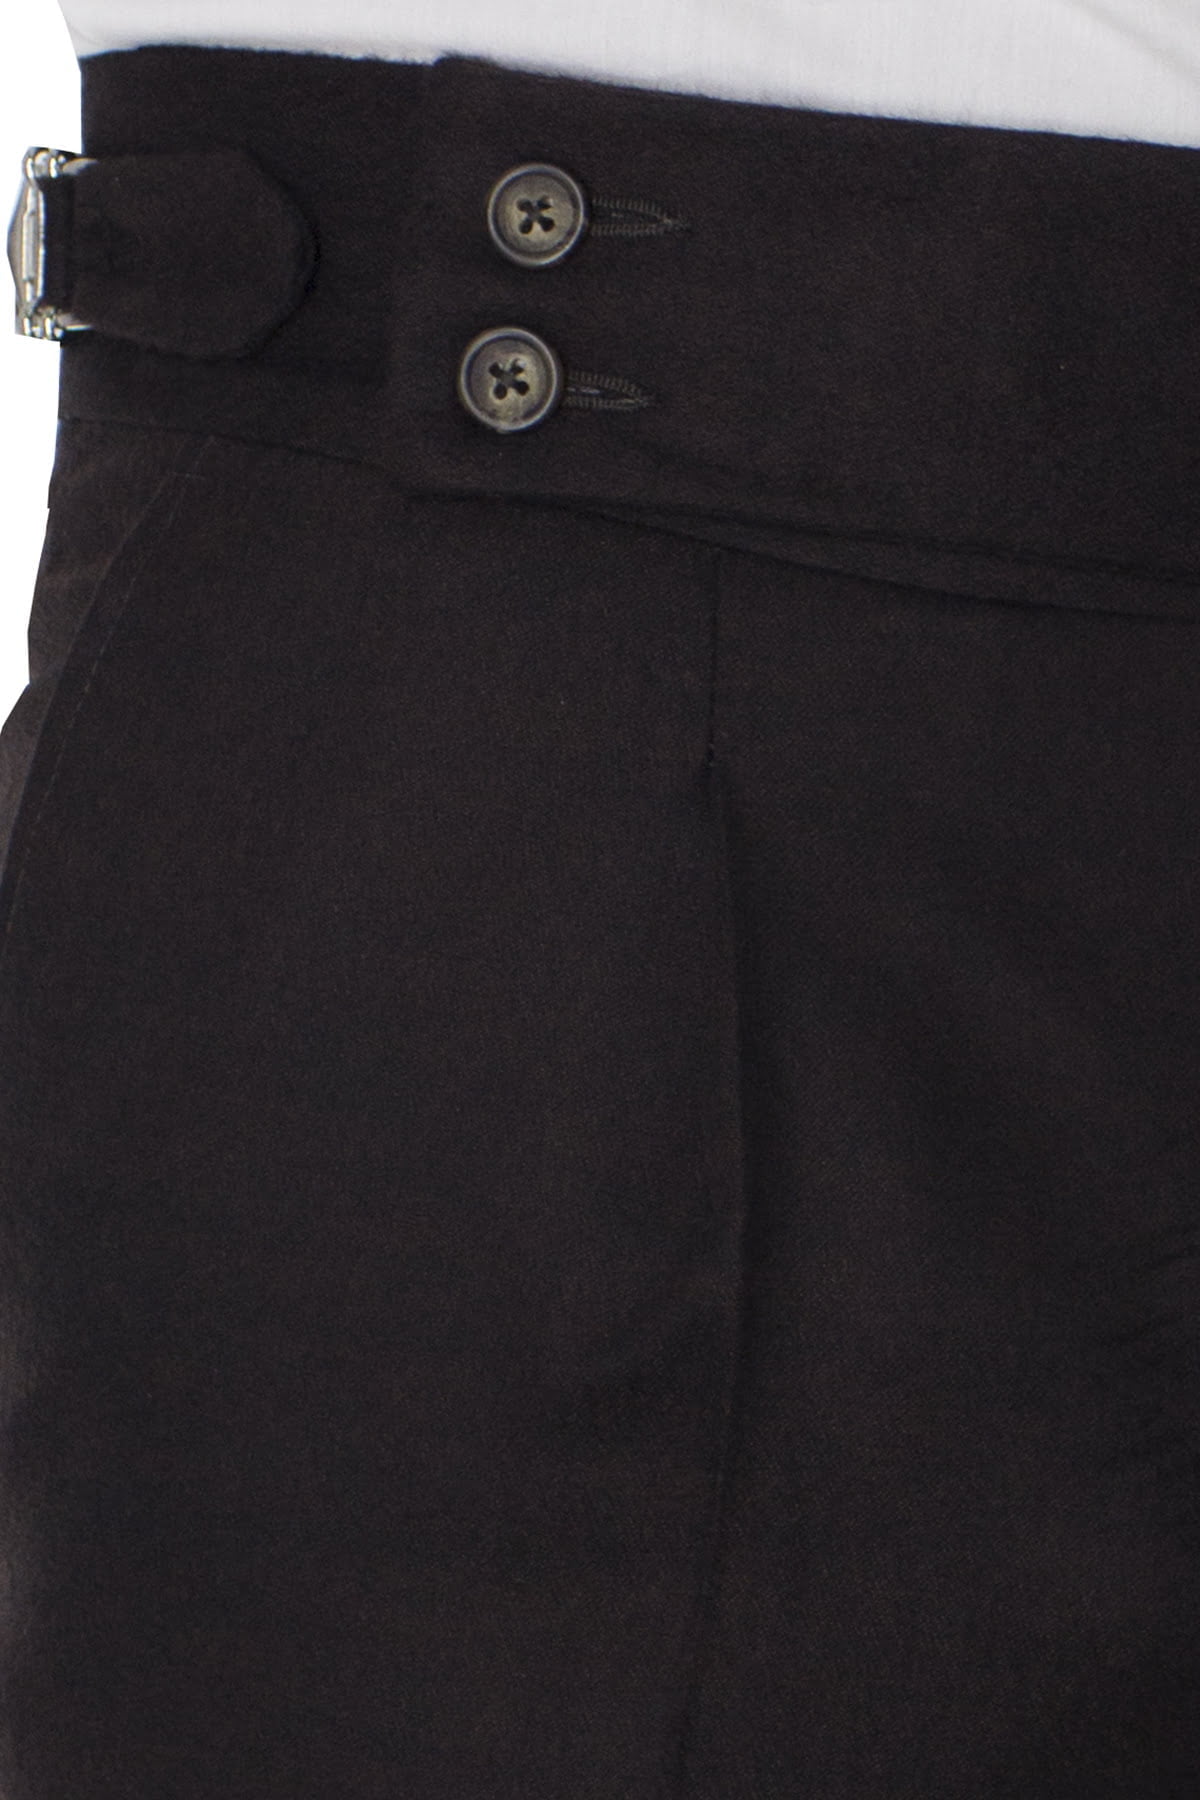 Pantalone uomo marrone cashmere 100% vita alta con pinces e fibbie laterali vitale barberis canonico